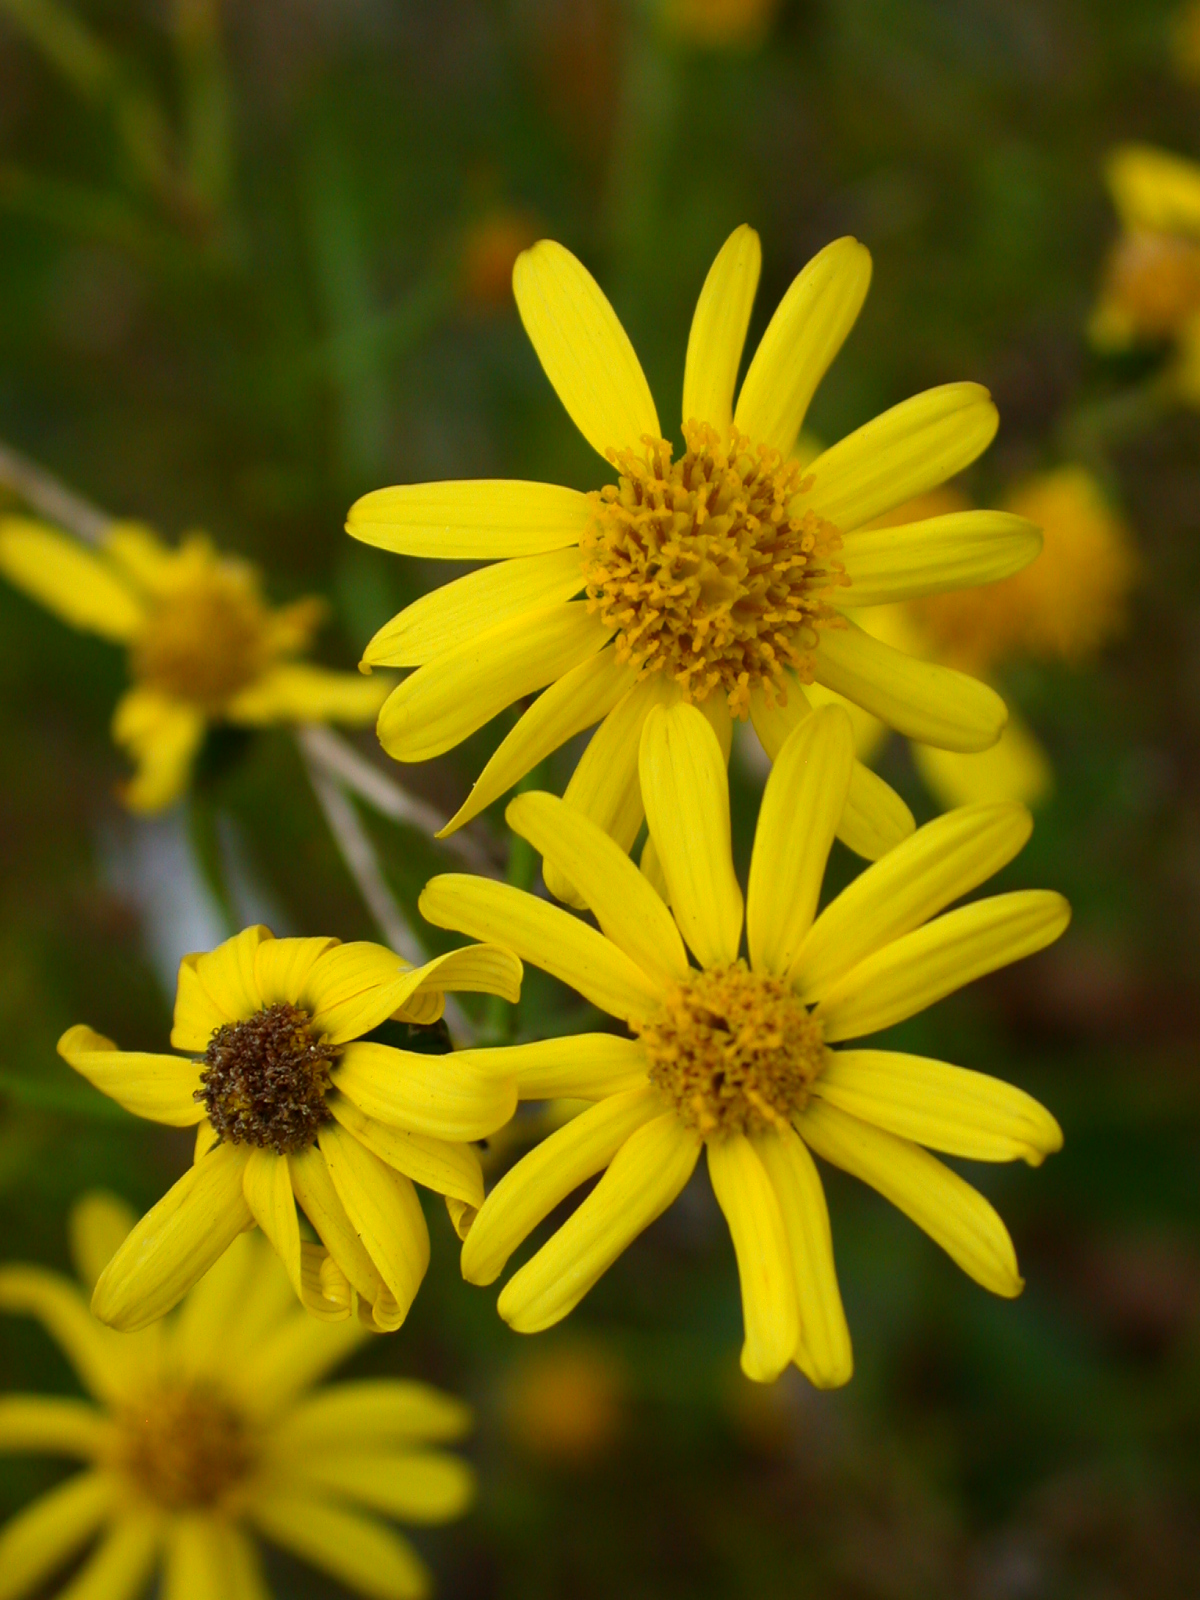 Yellow flowers of Senecio inaequidens.